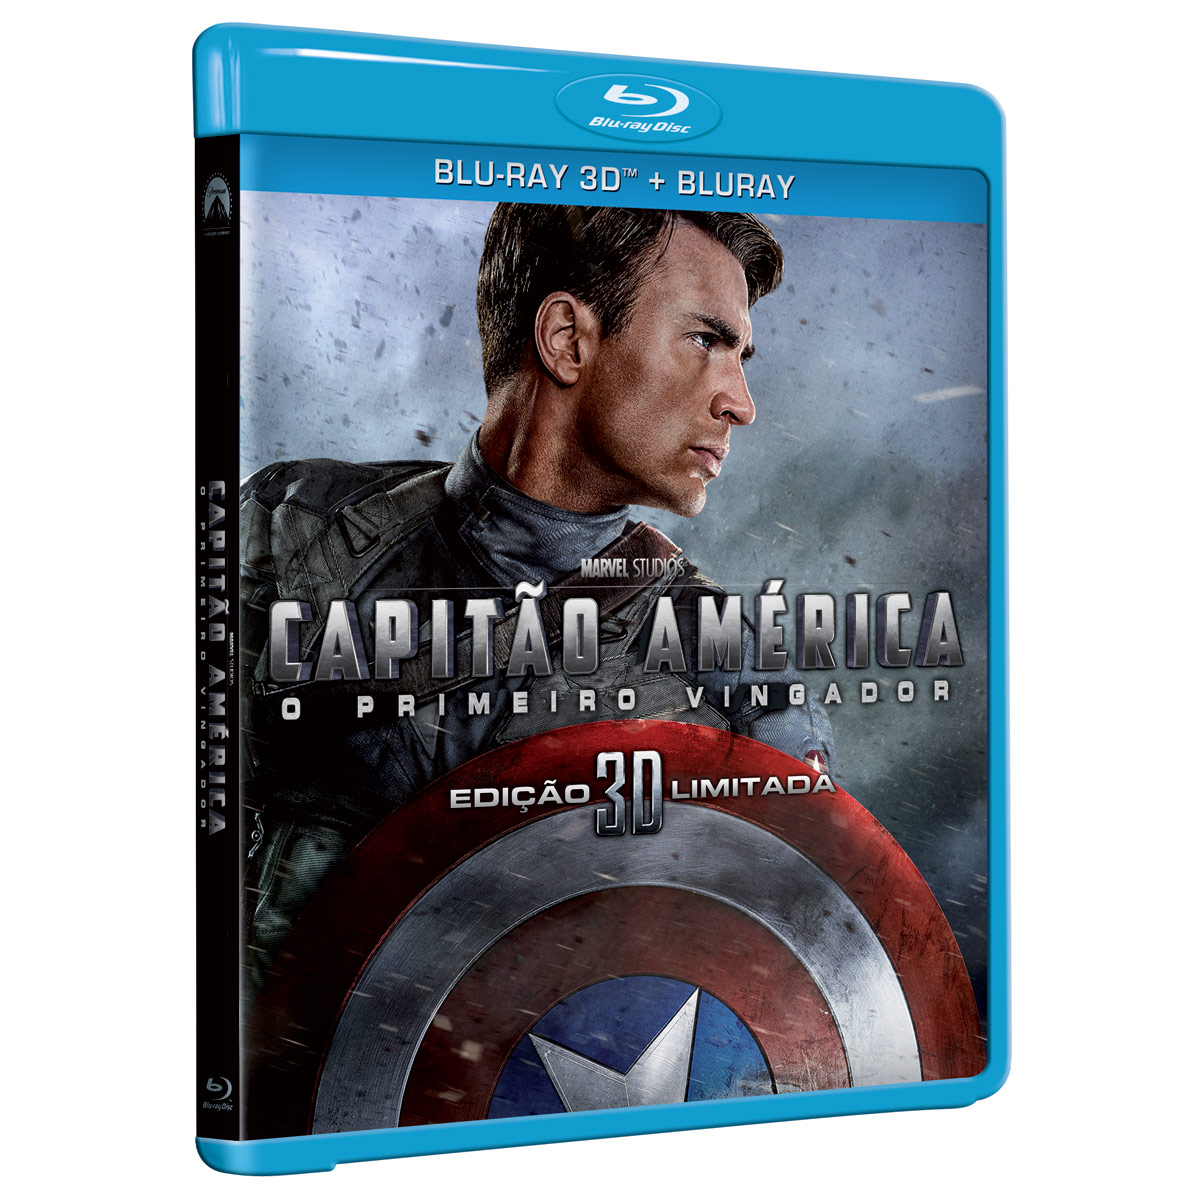 Caixa do Blu Ray do Filme Capitão América.